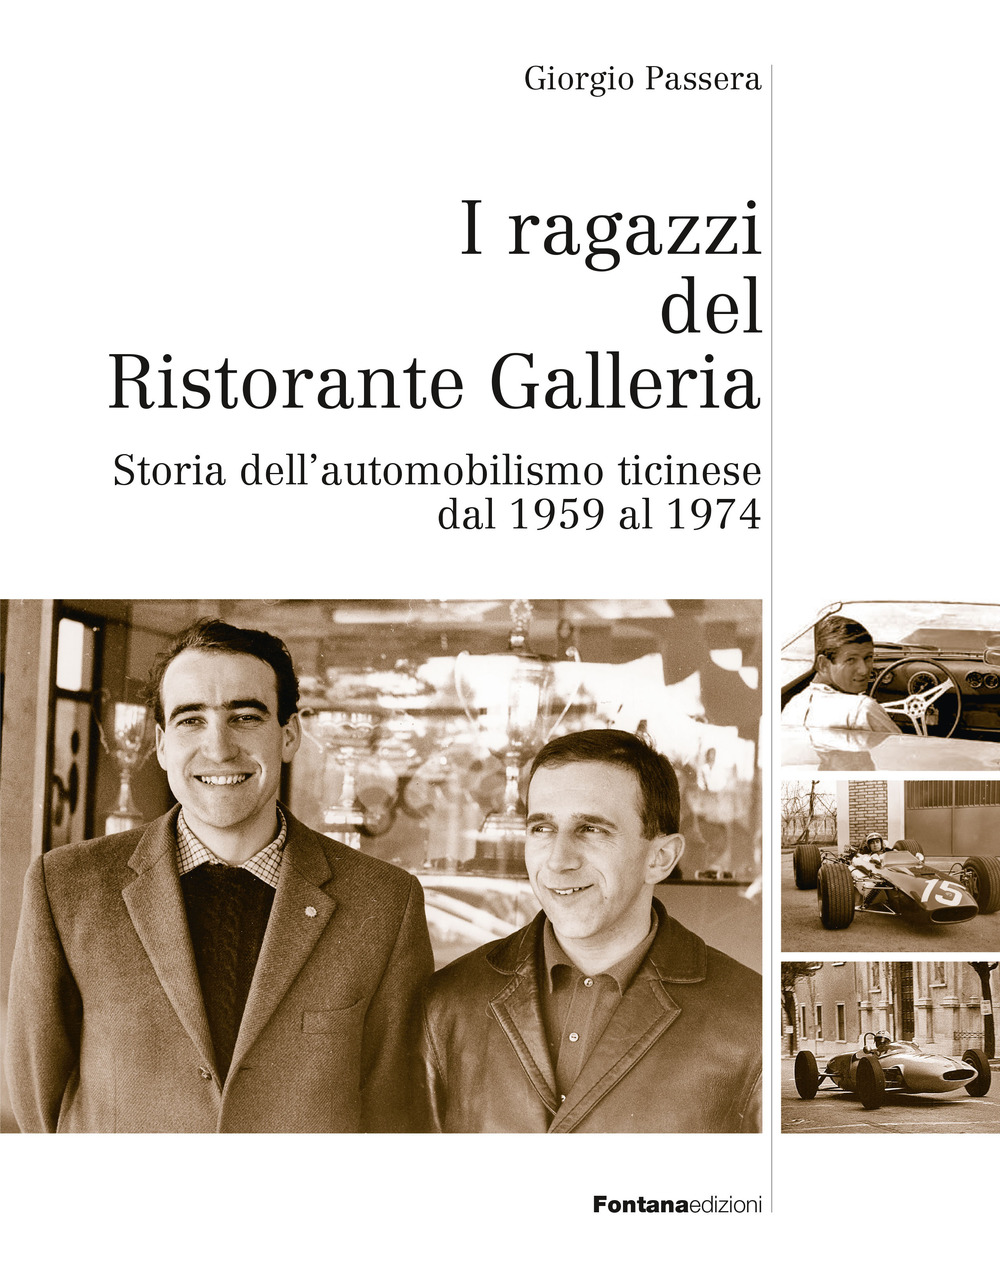 I ragazzi del ristorante Galleria. Storia dell'automobilismo ticinese dal 1959 al 1974